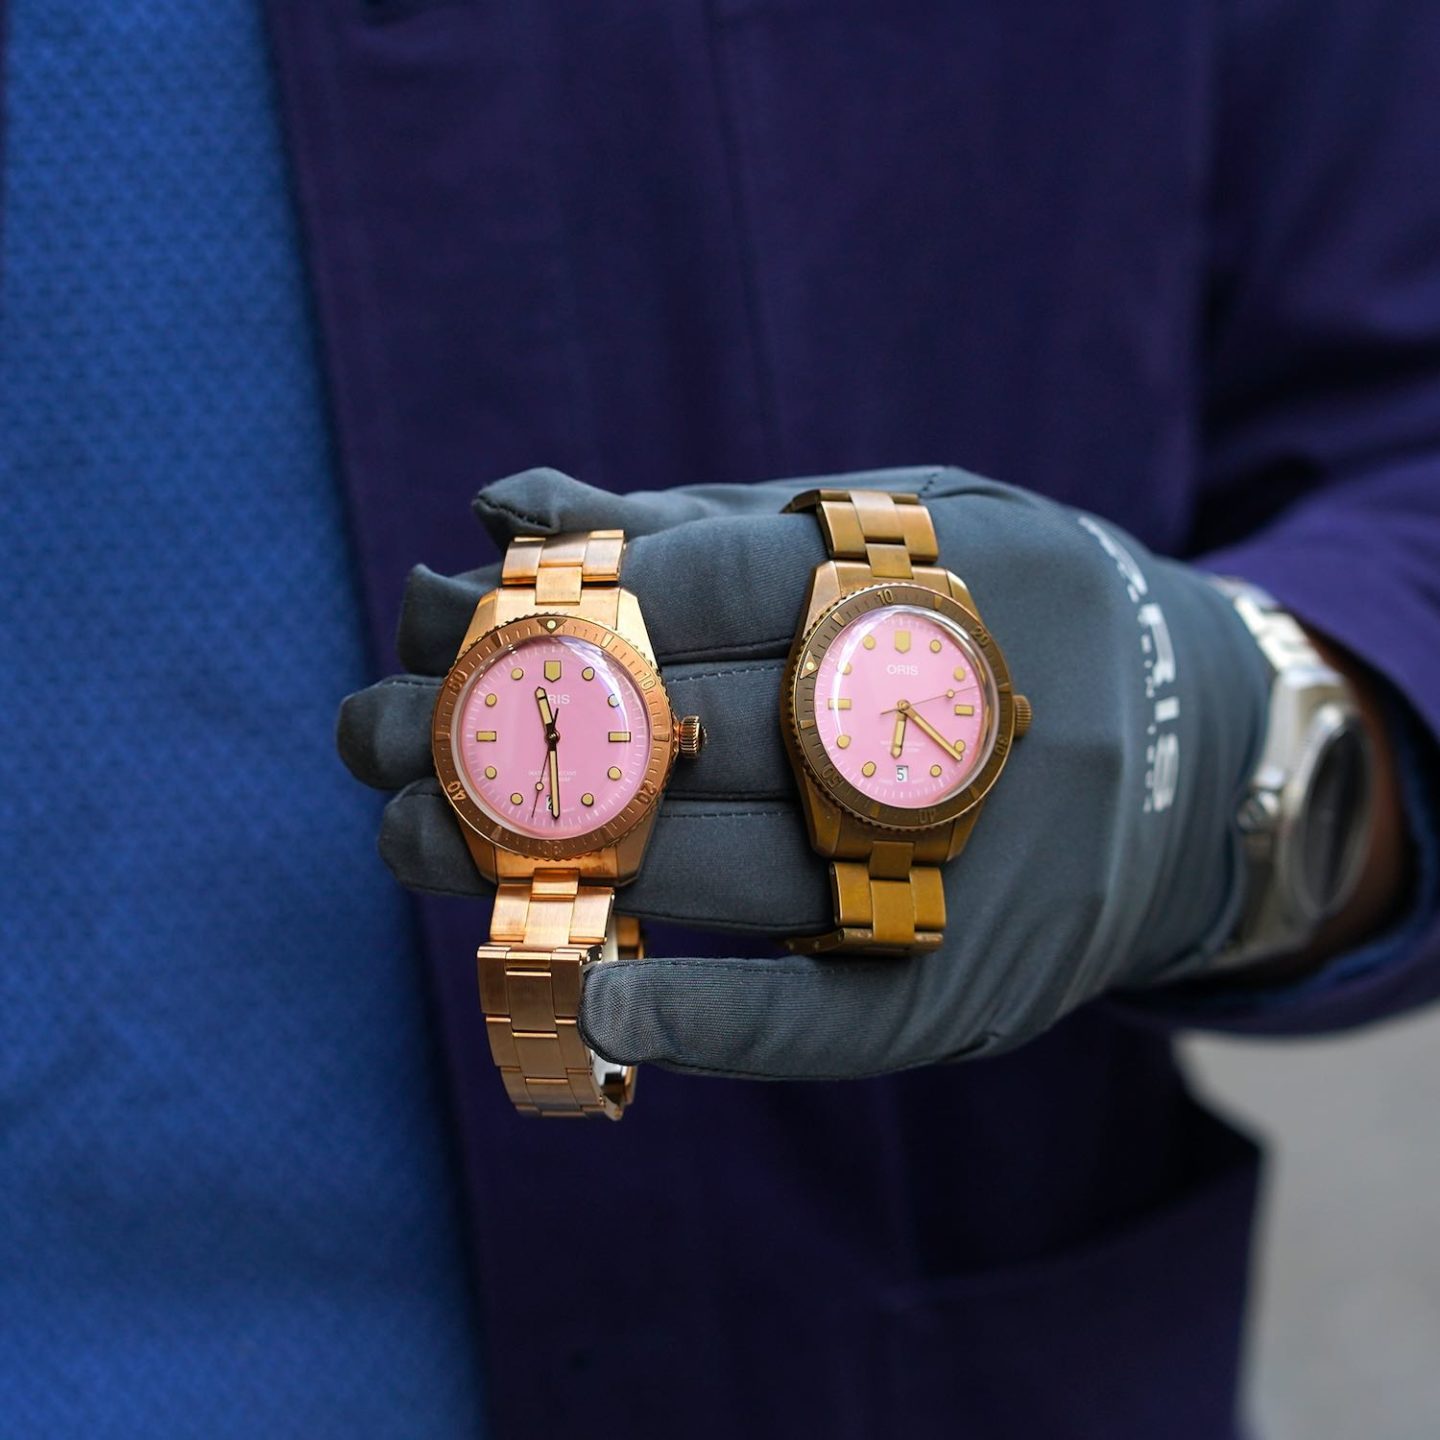 comparaison entre 2 montres Oris en bronze cotton candy patinée et neuve